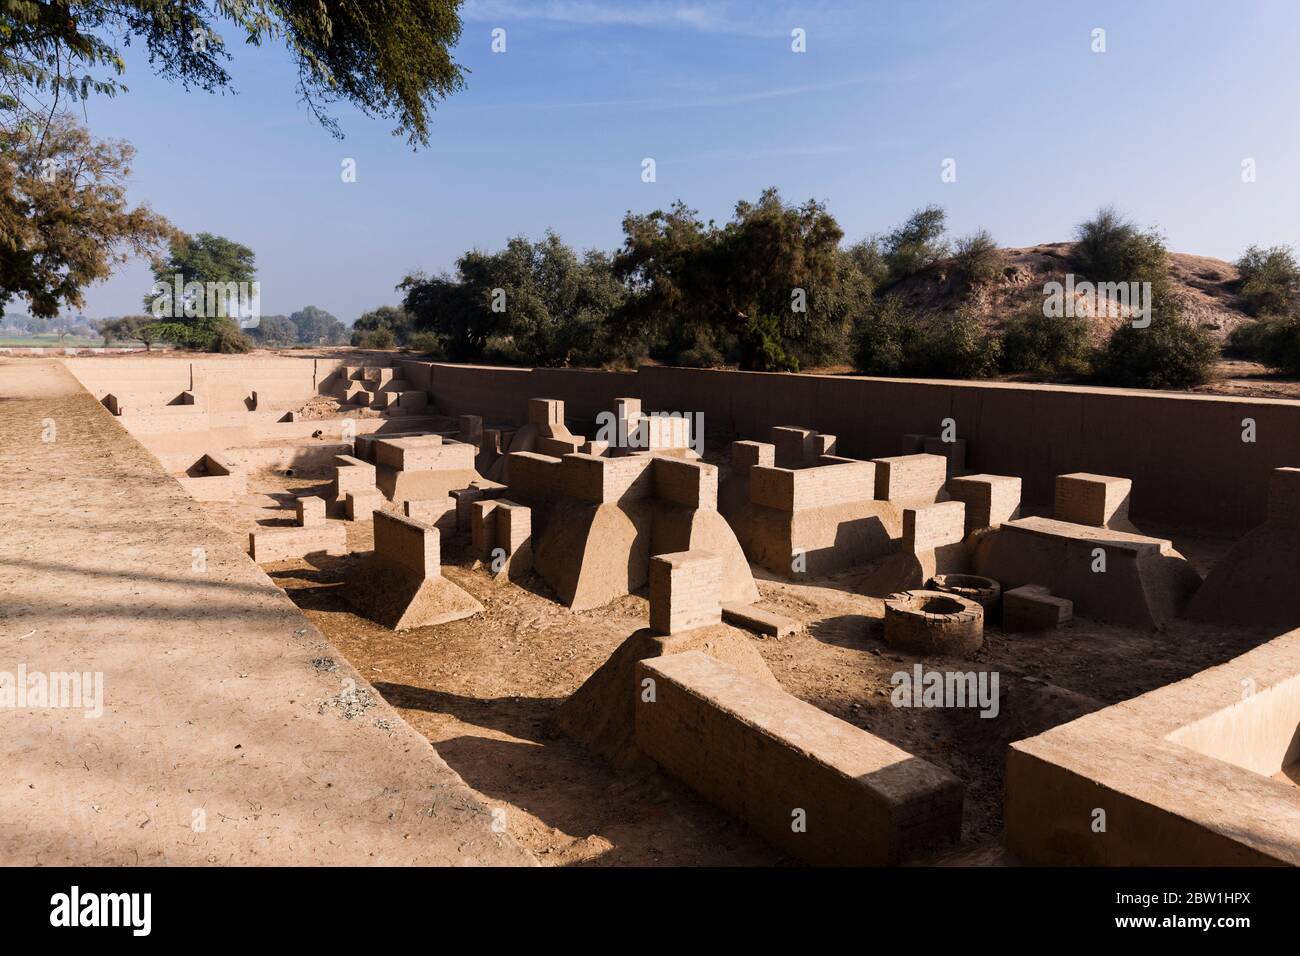 Sitio arqueológico de Harappa, civilización de Harappan, civilización del Valle del Indo, Distrito de Sahiwal, Provincia de Punjab, Pakistán, Asia del Sur, Asia Foto de stock